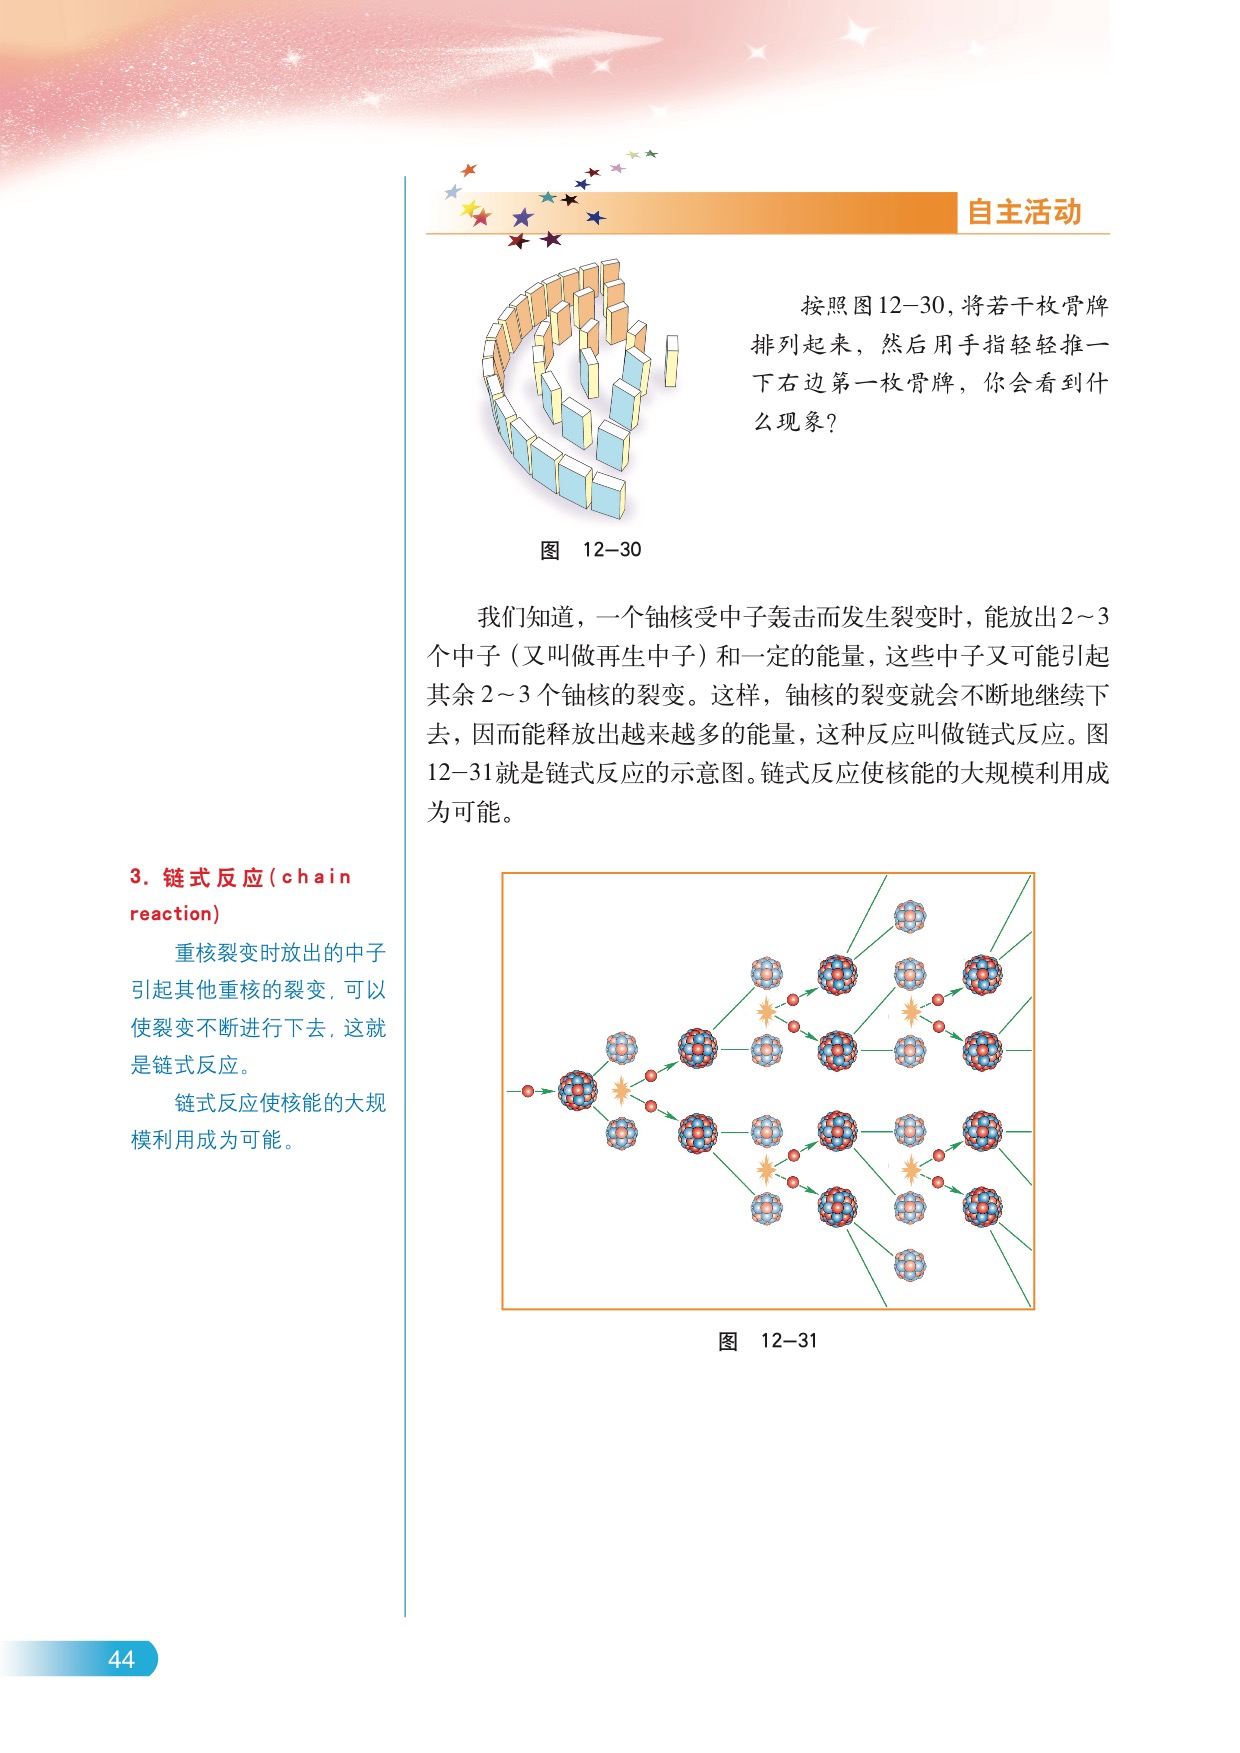 D.重核裂变 链式反应(3)